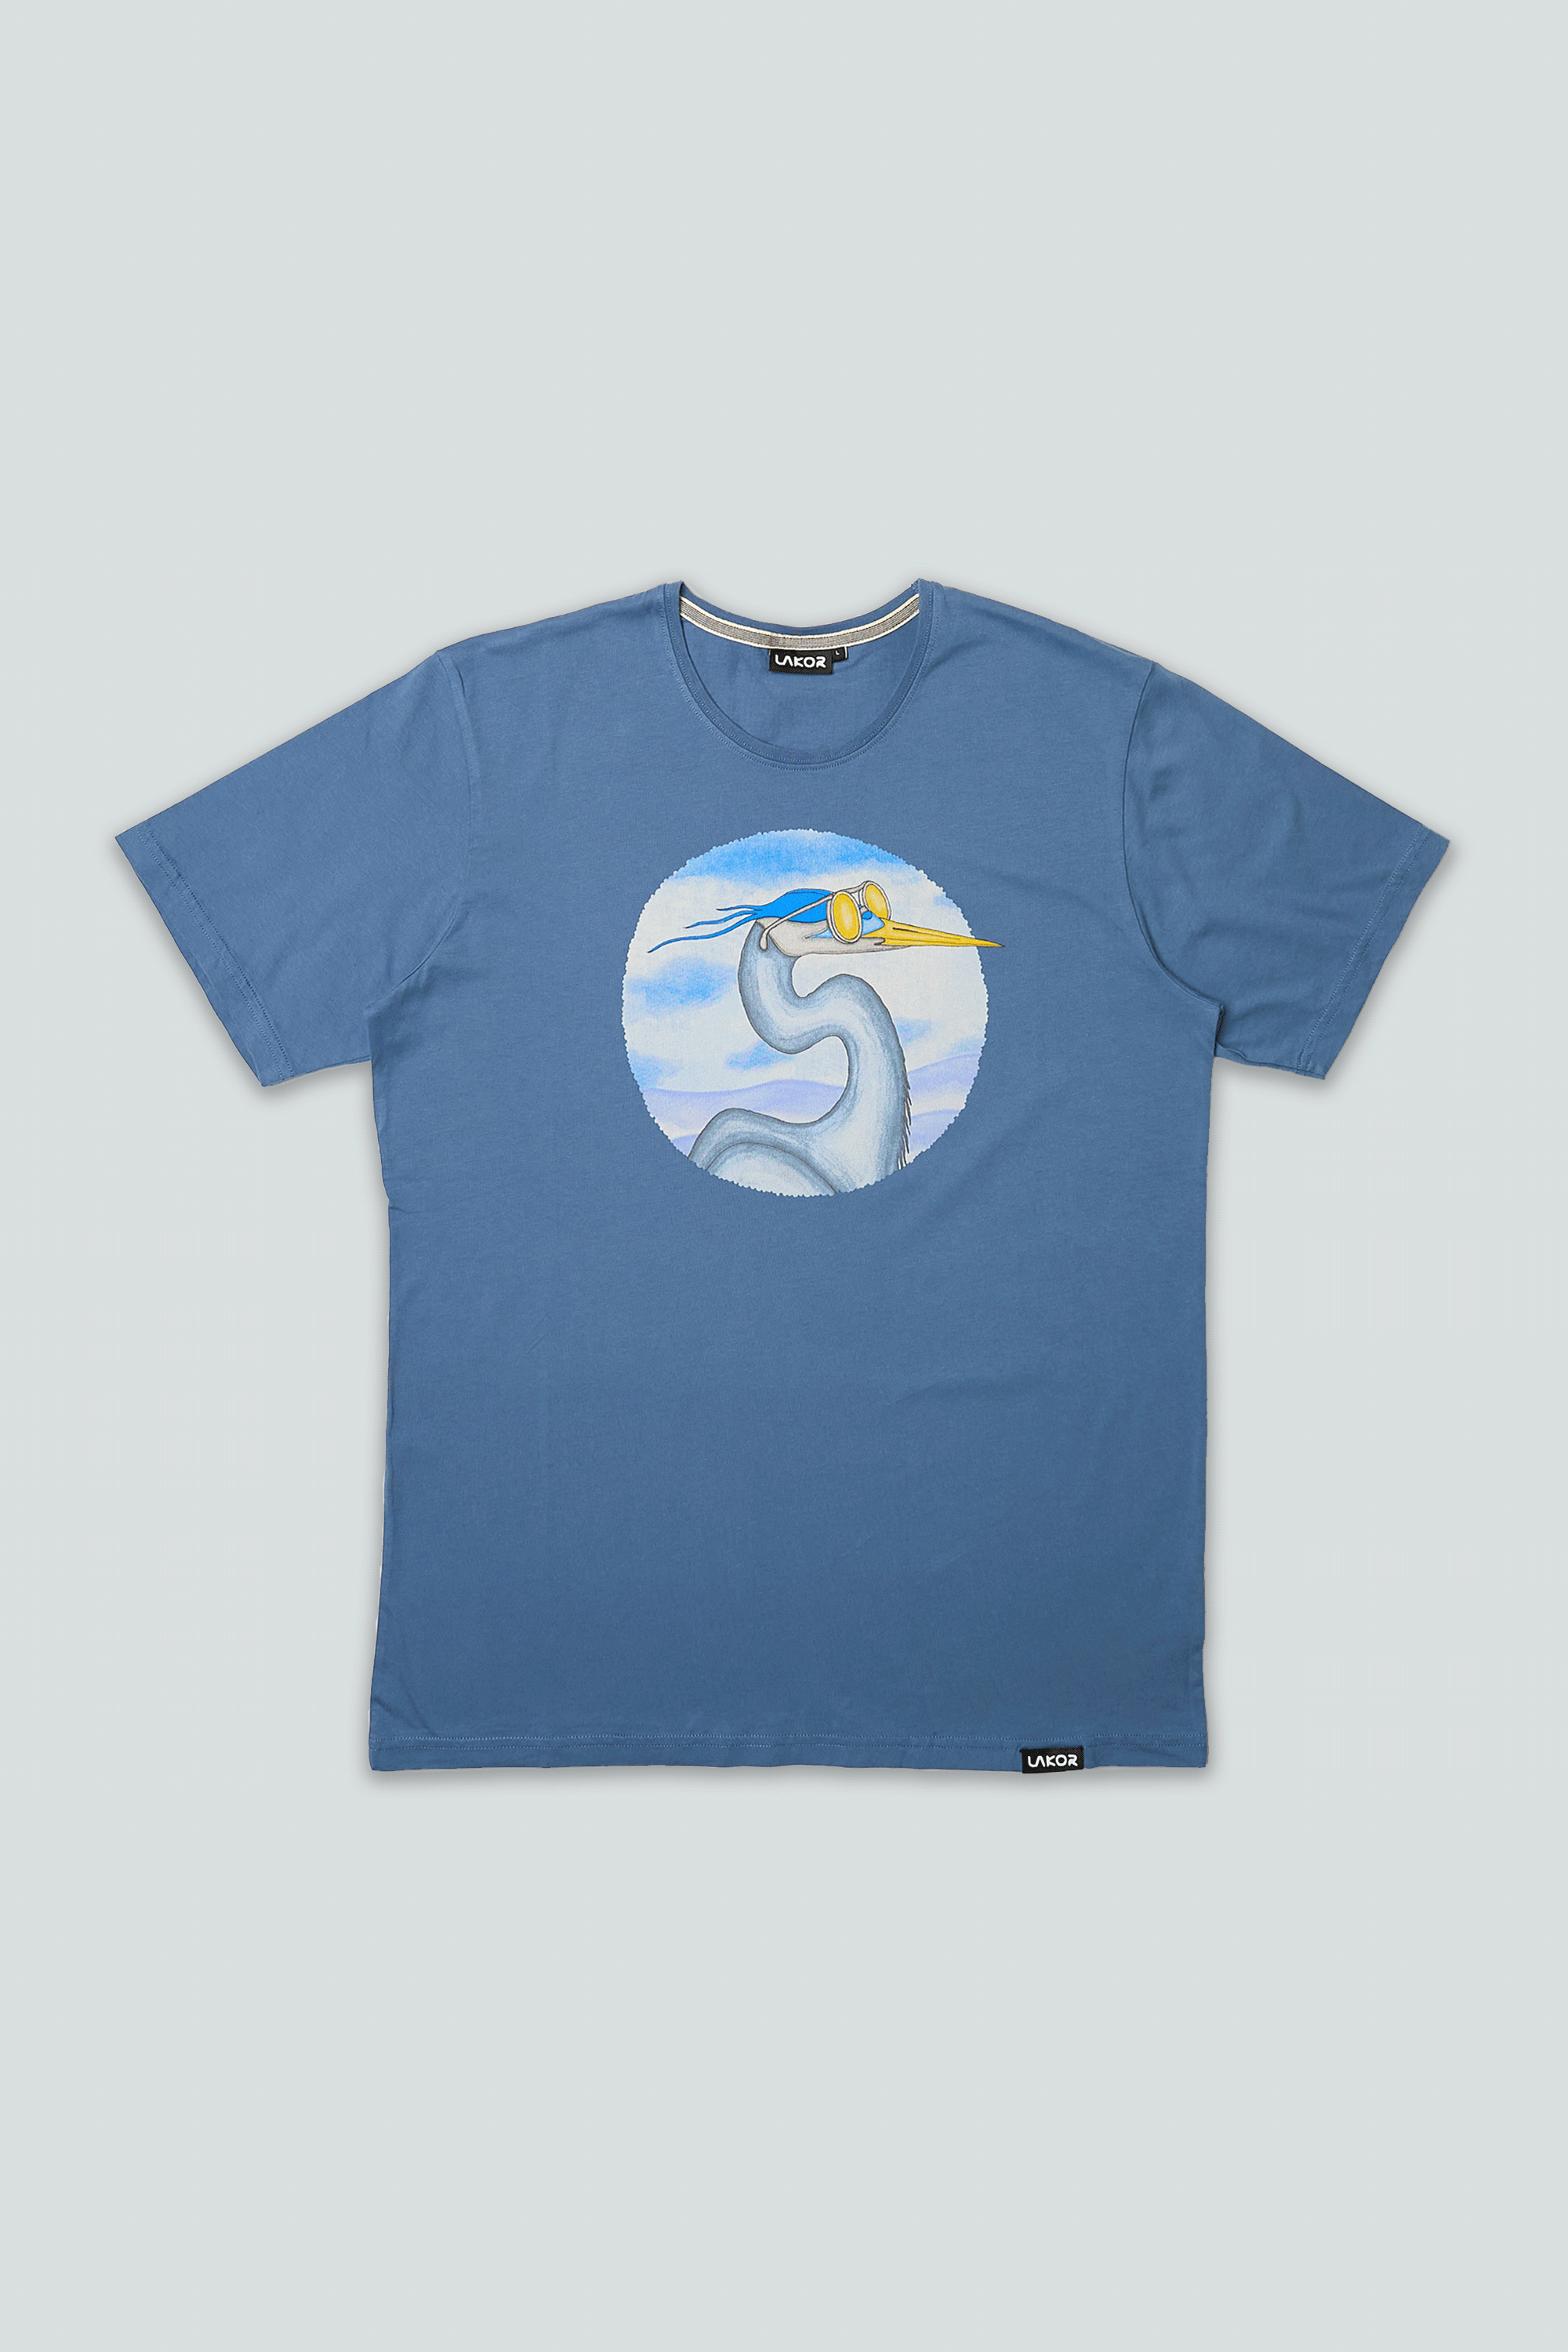 Egret T-shirt (Bering Sea)